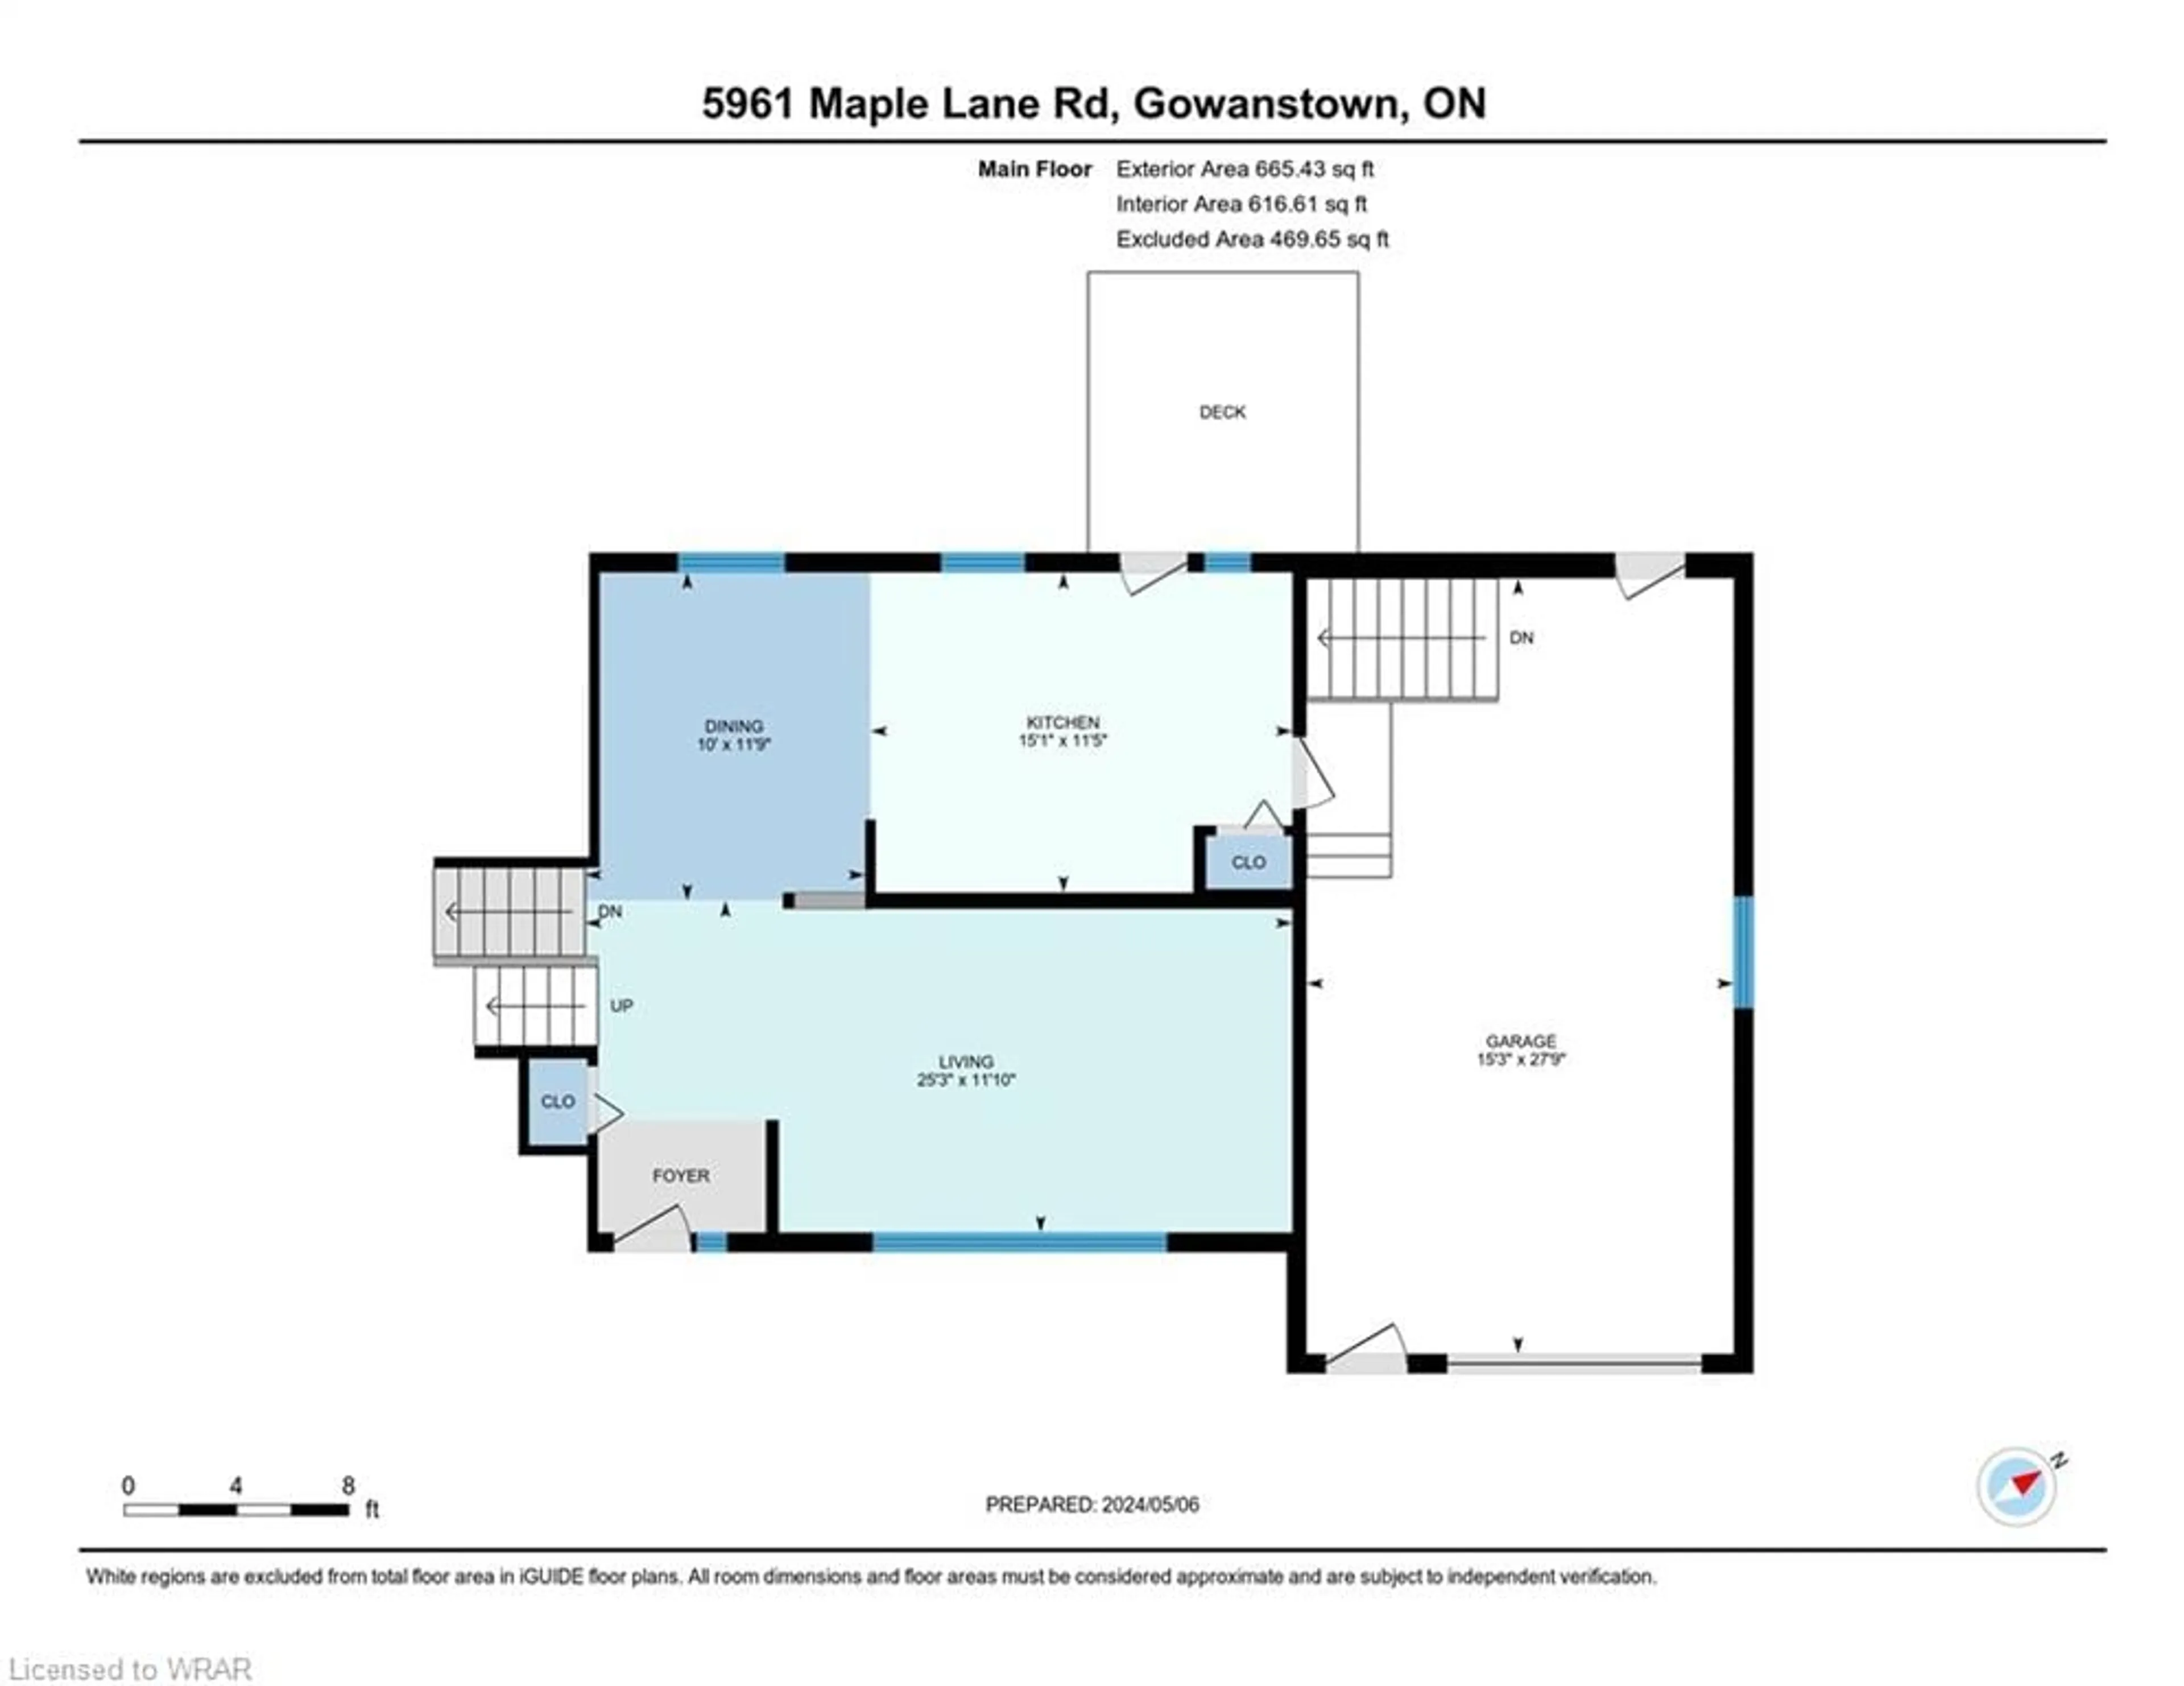 Floor plan for 5961 Maple Lane Rd, Gowanstown Ontario N0G 1Y0